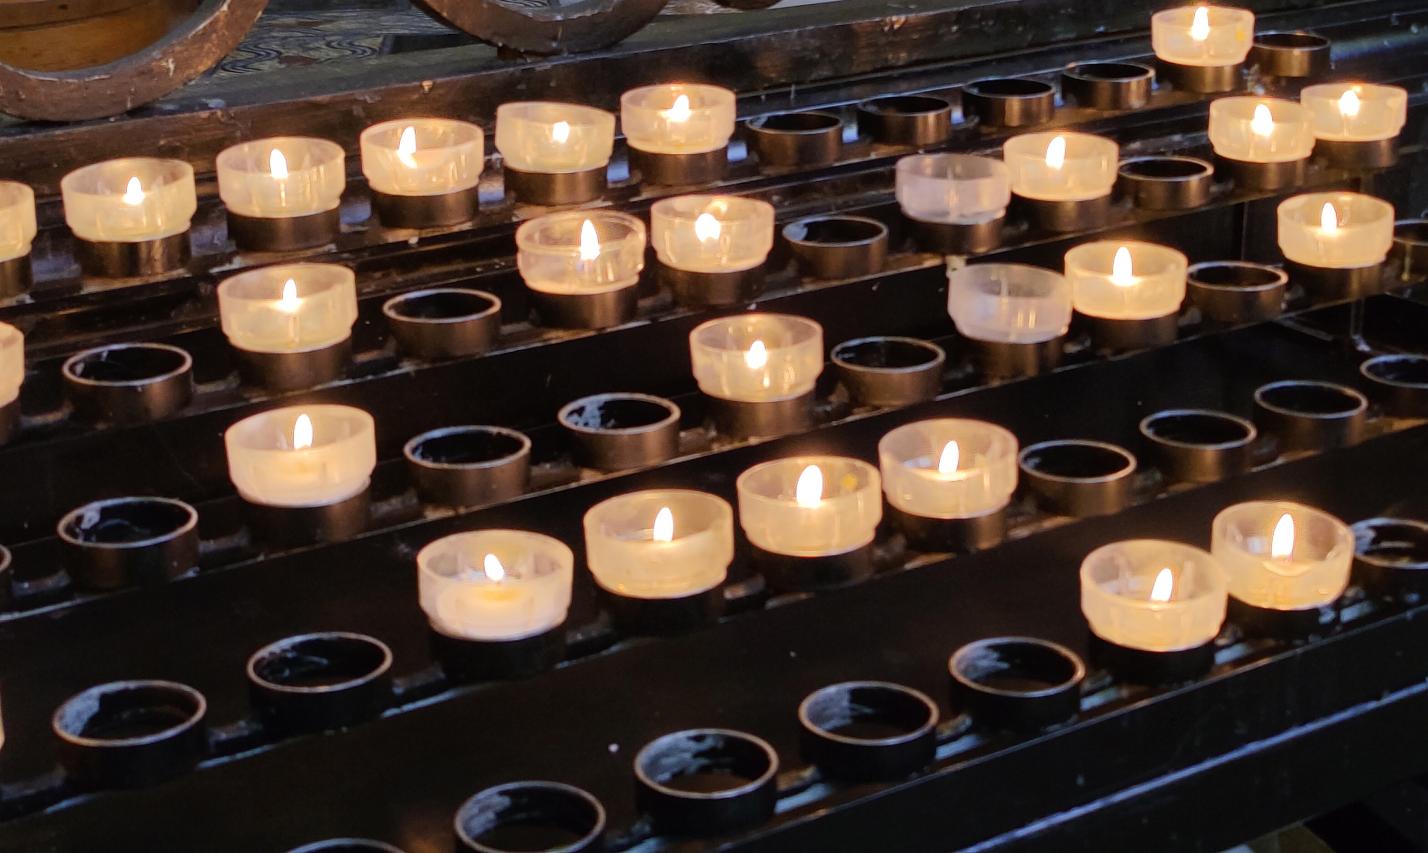 Kerzen - Licht und Hoffnung